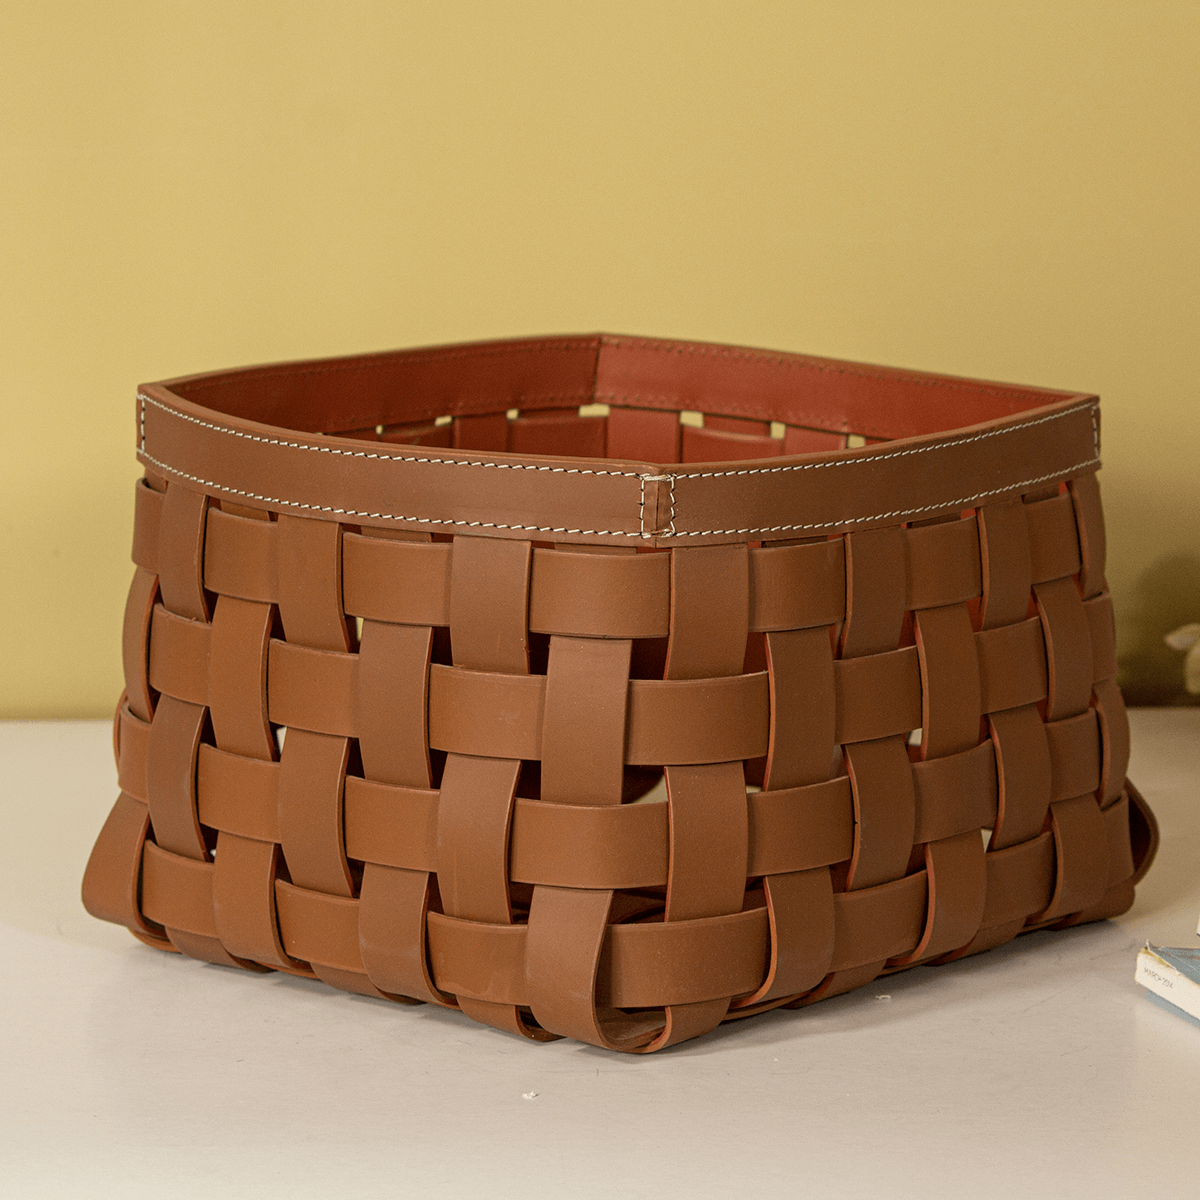 Multipurpose Storage Baskets Medium - Cognac